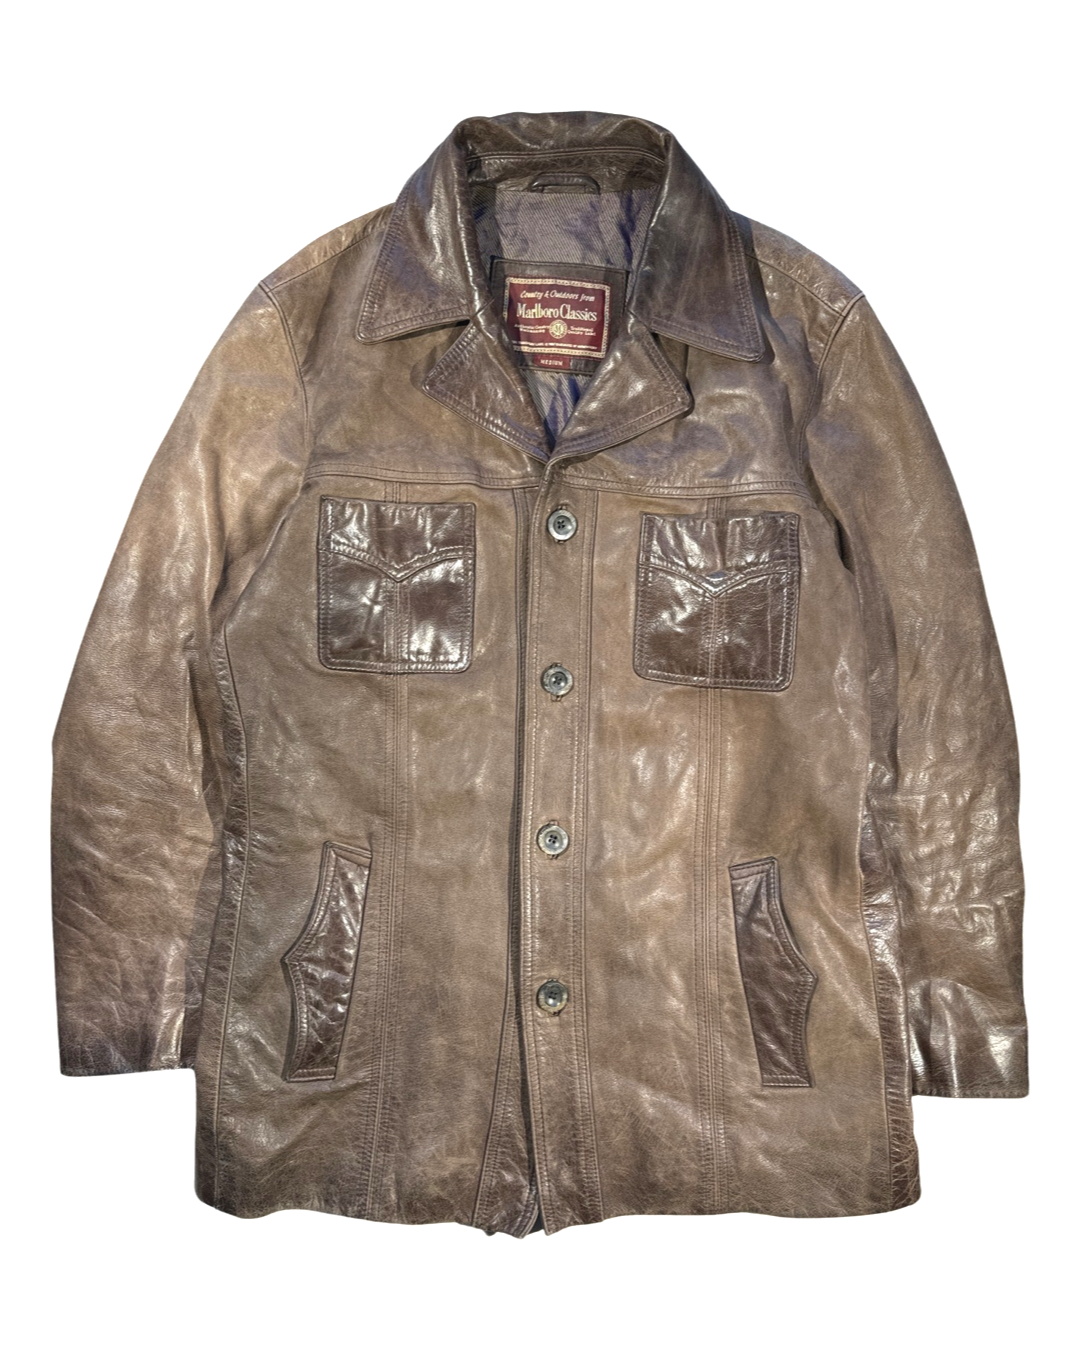 Vintage Marlboro Leather Jacket - M